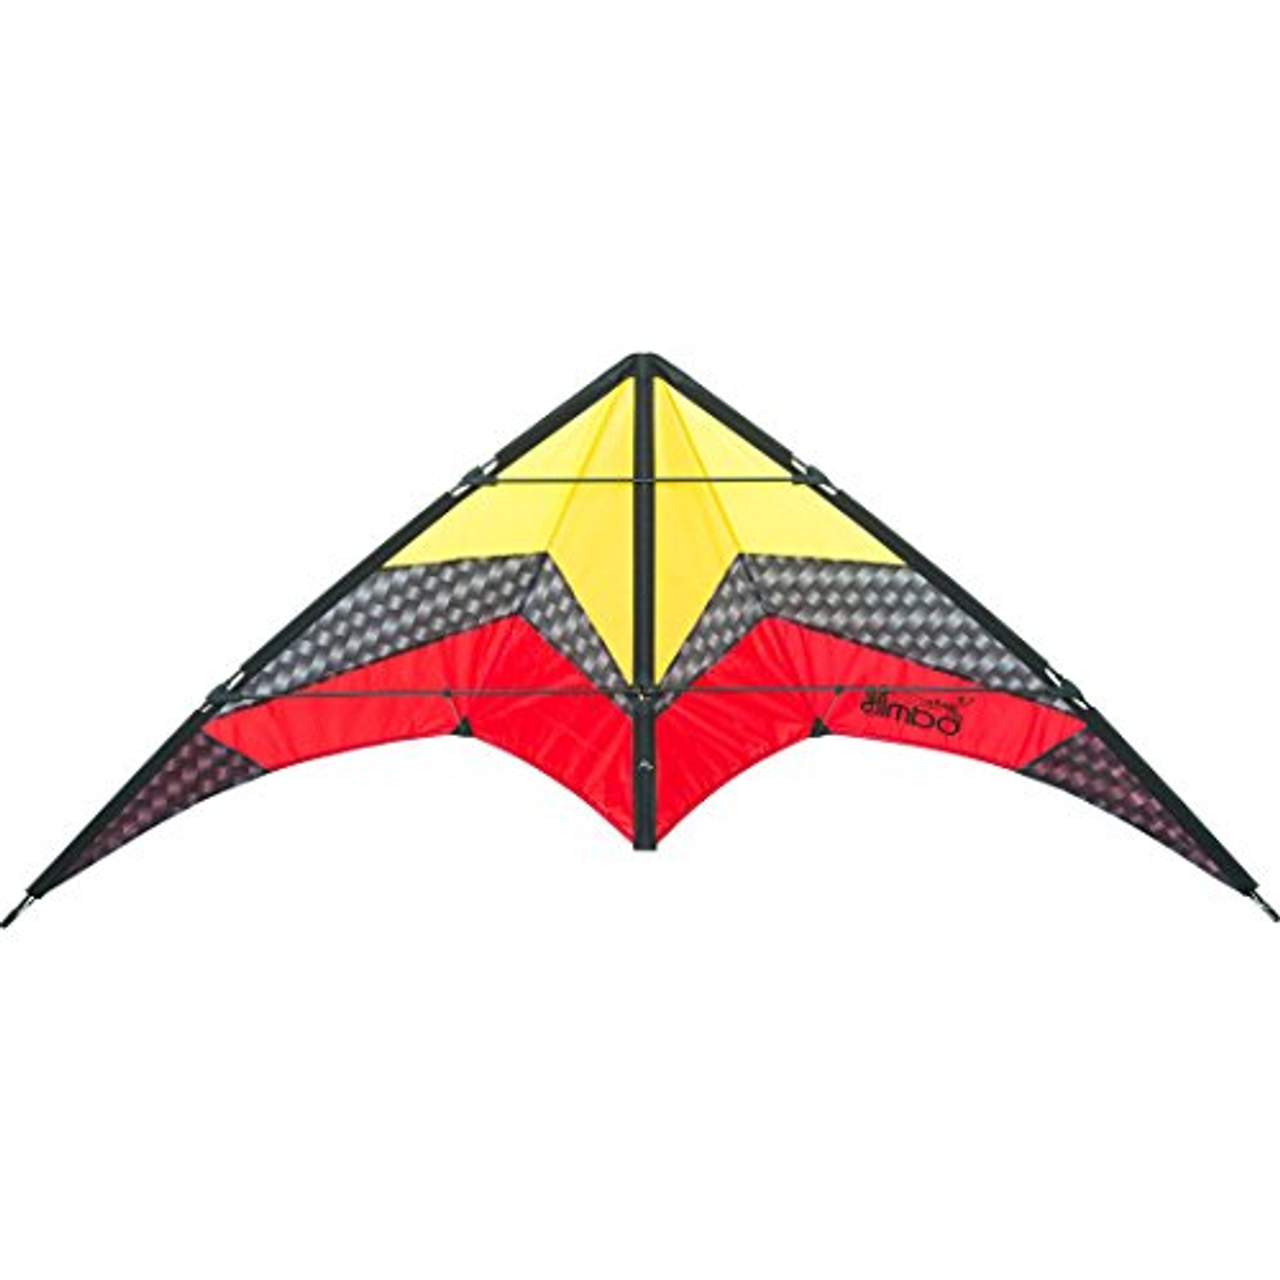 Lenkdrachen für Outdoor-Spaß High Flying Drachen mit mehrfarbigem Panel-Design Dual Line Lenkdrachen Einsteigerdrachen International Buying Services Lenkdrachen 120 x 60 cm Dual Line Drachen